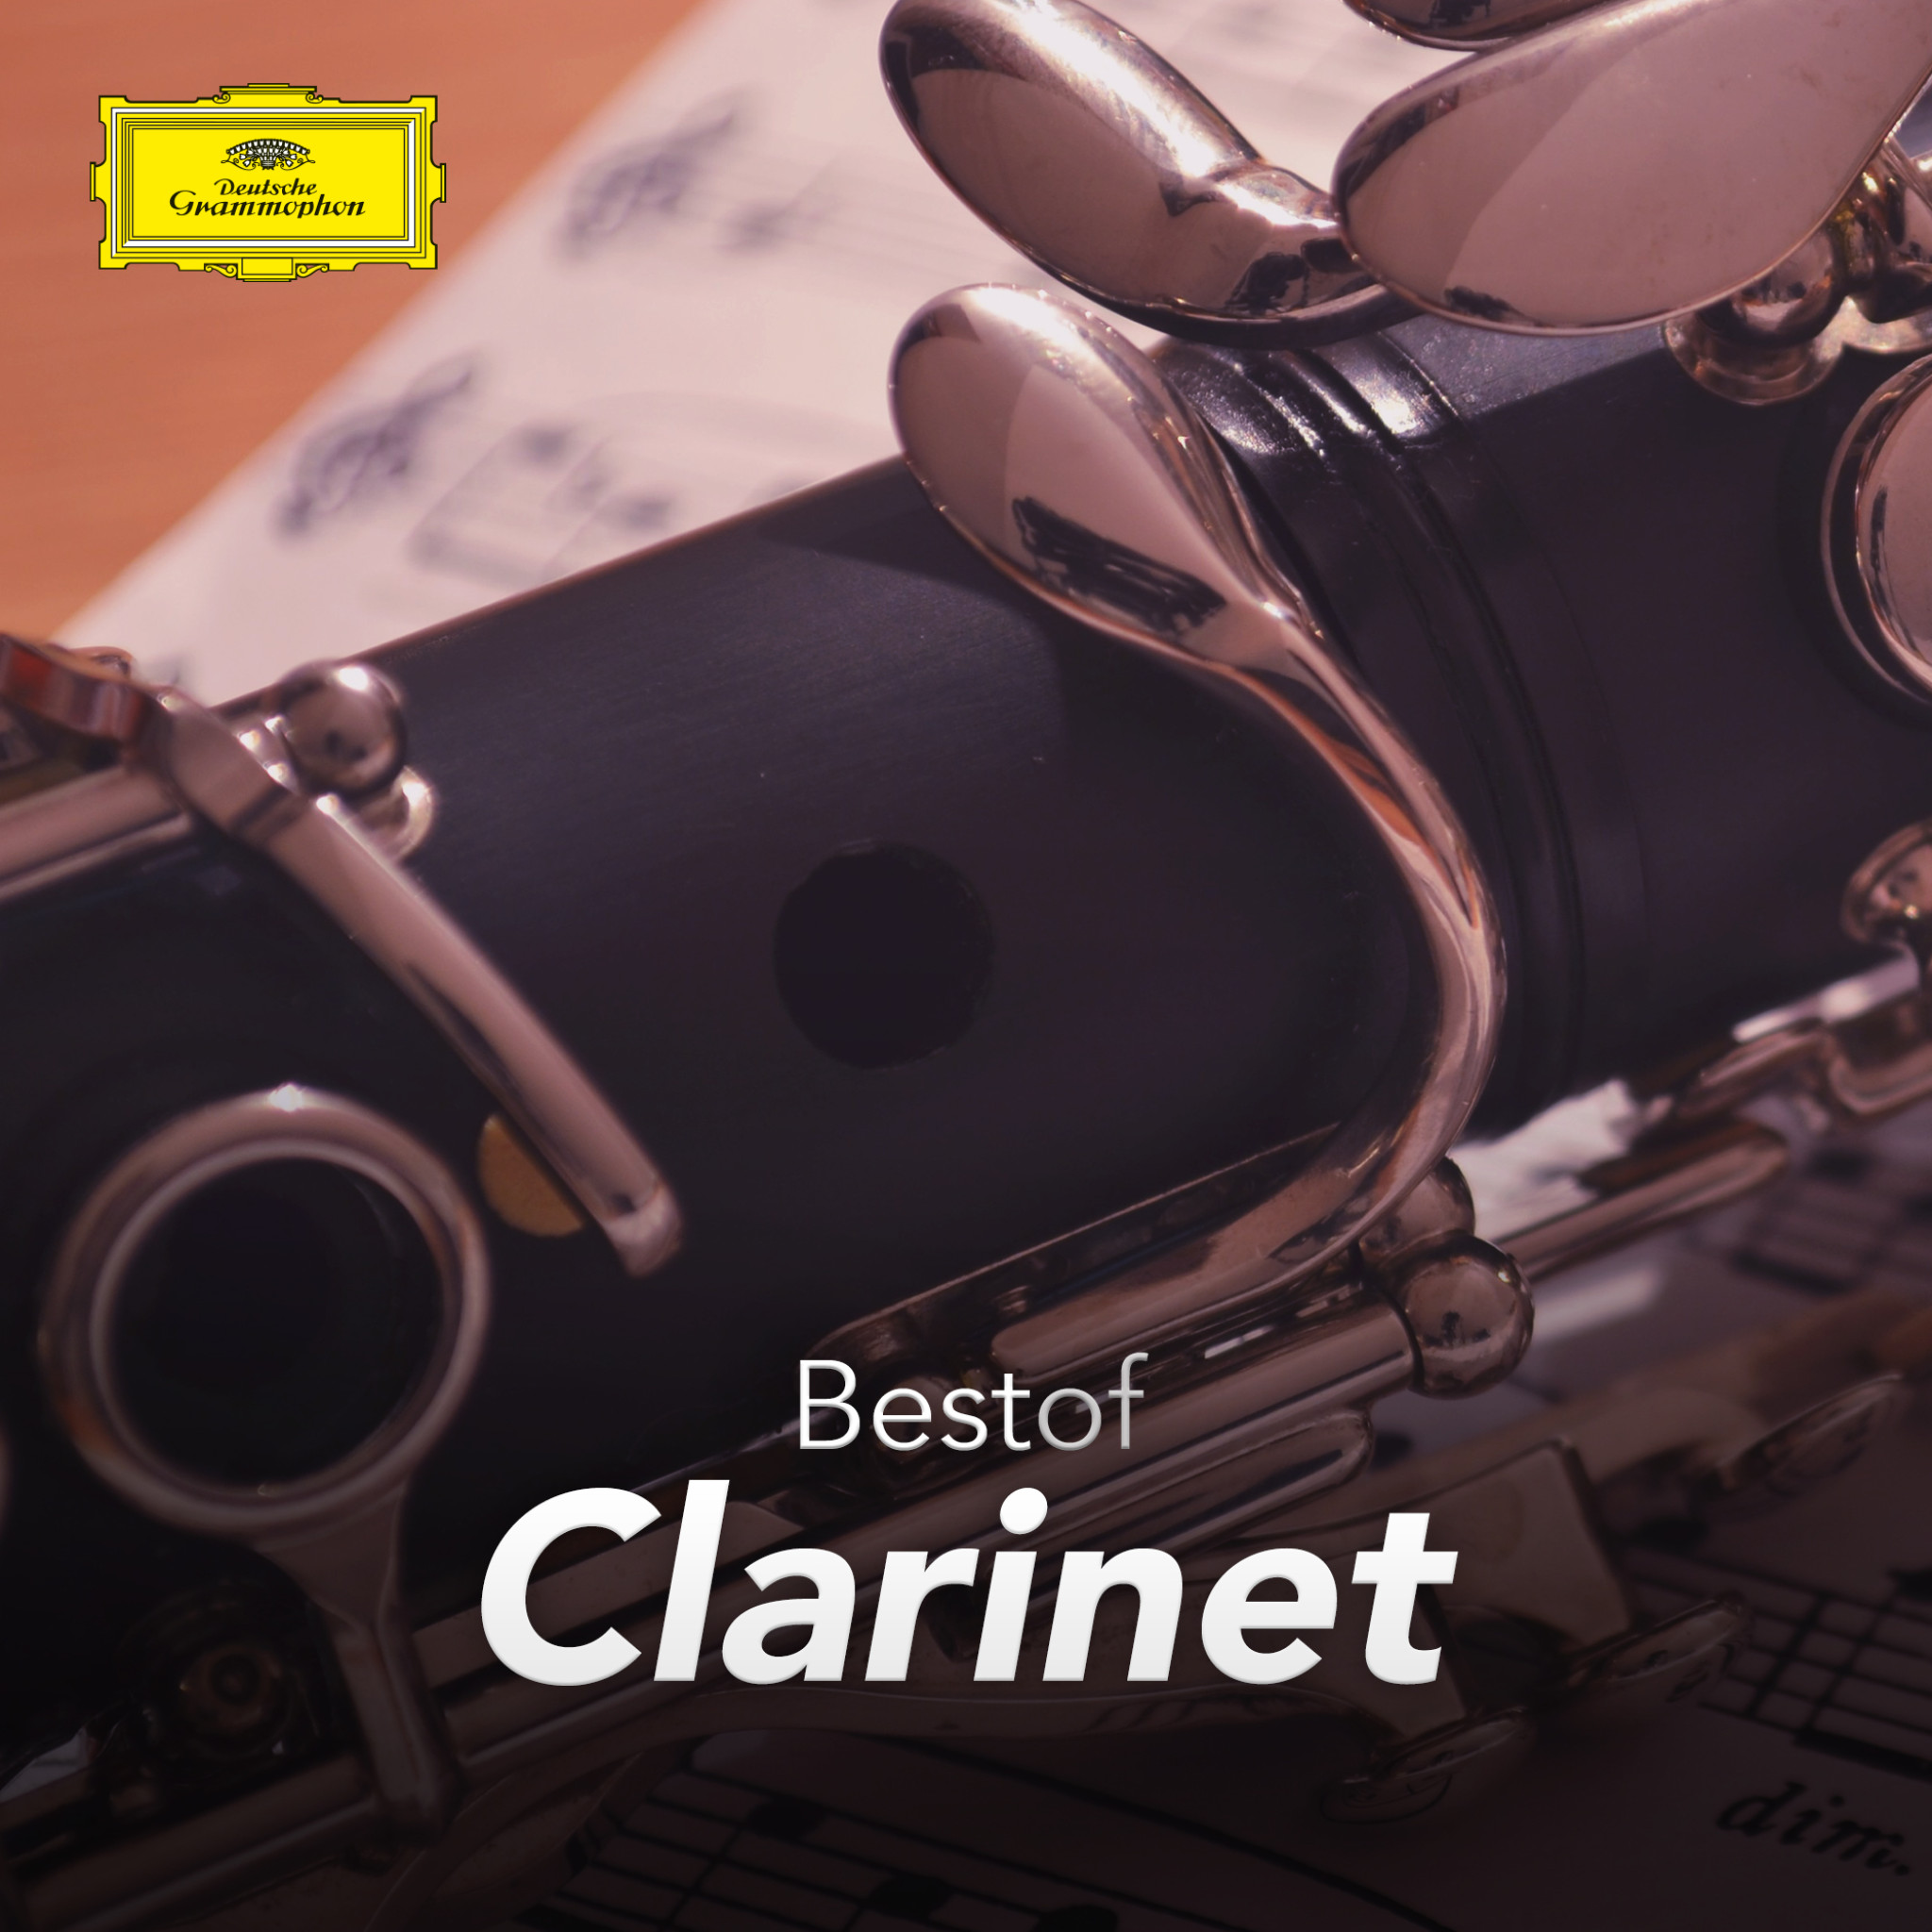 Best-Clarinet.jpg